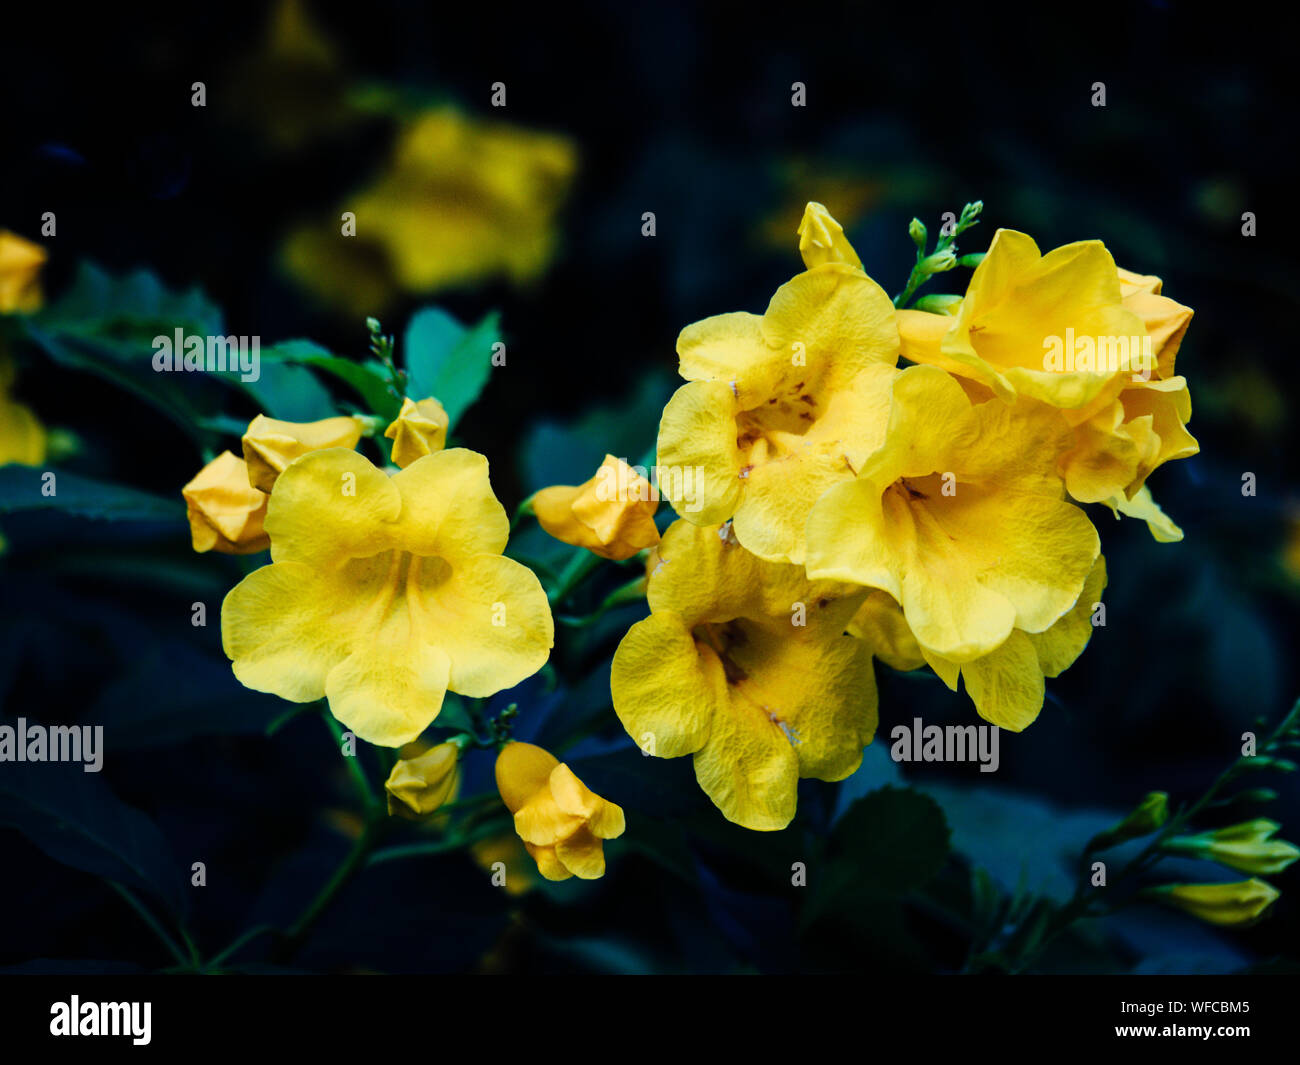 Tecoma stans Baum im Garten, Blüten gelb Trumpetbush, Common Name gelbe Glocke/Gelb Elder / Trompete Weinstock. Stockfoto